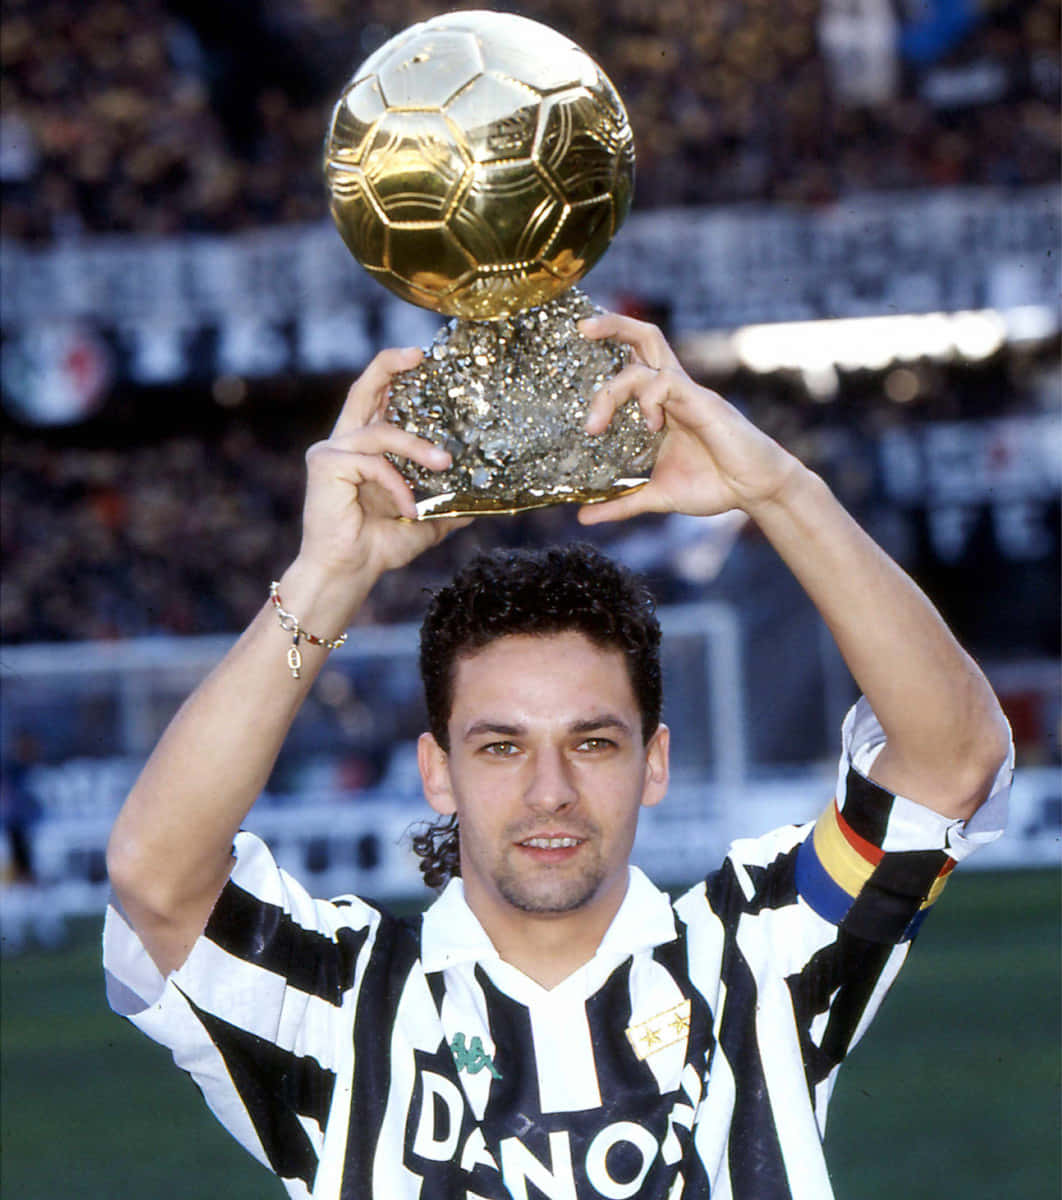 Robertobaggio Levantando El Trofeo Balón De Oro De 1993 Fondo de pantalla